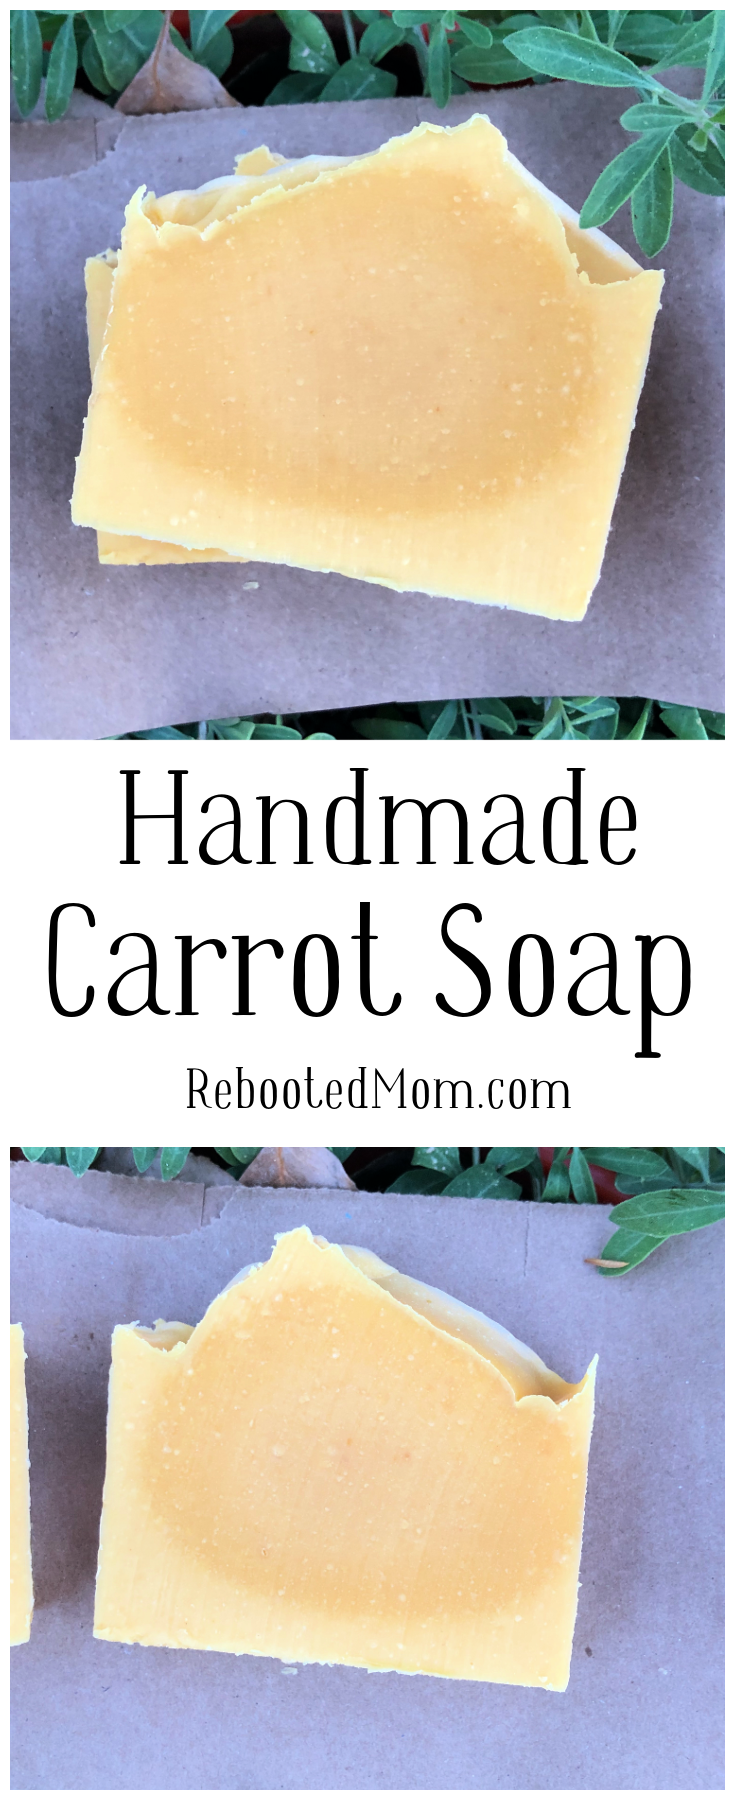 Handmade Carrot Soap